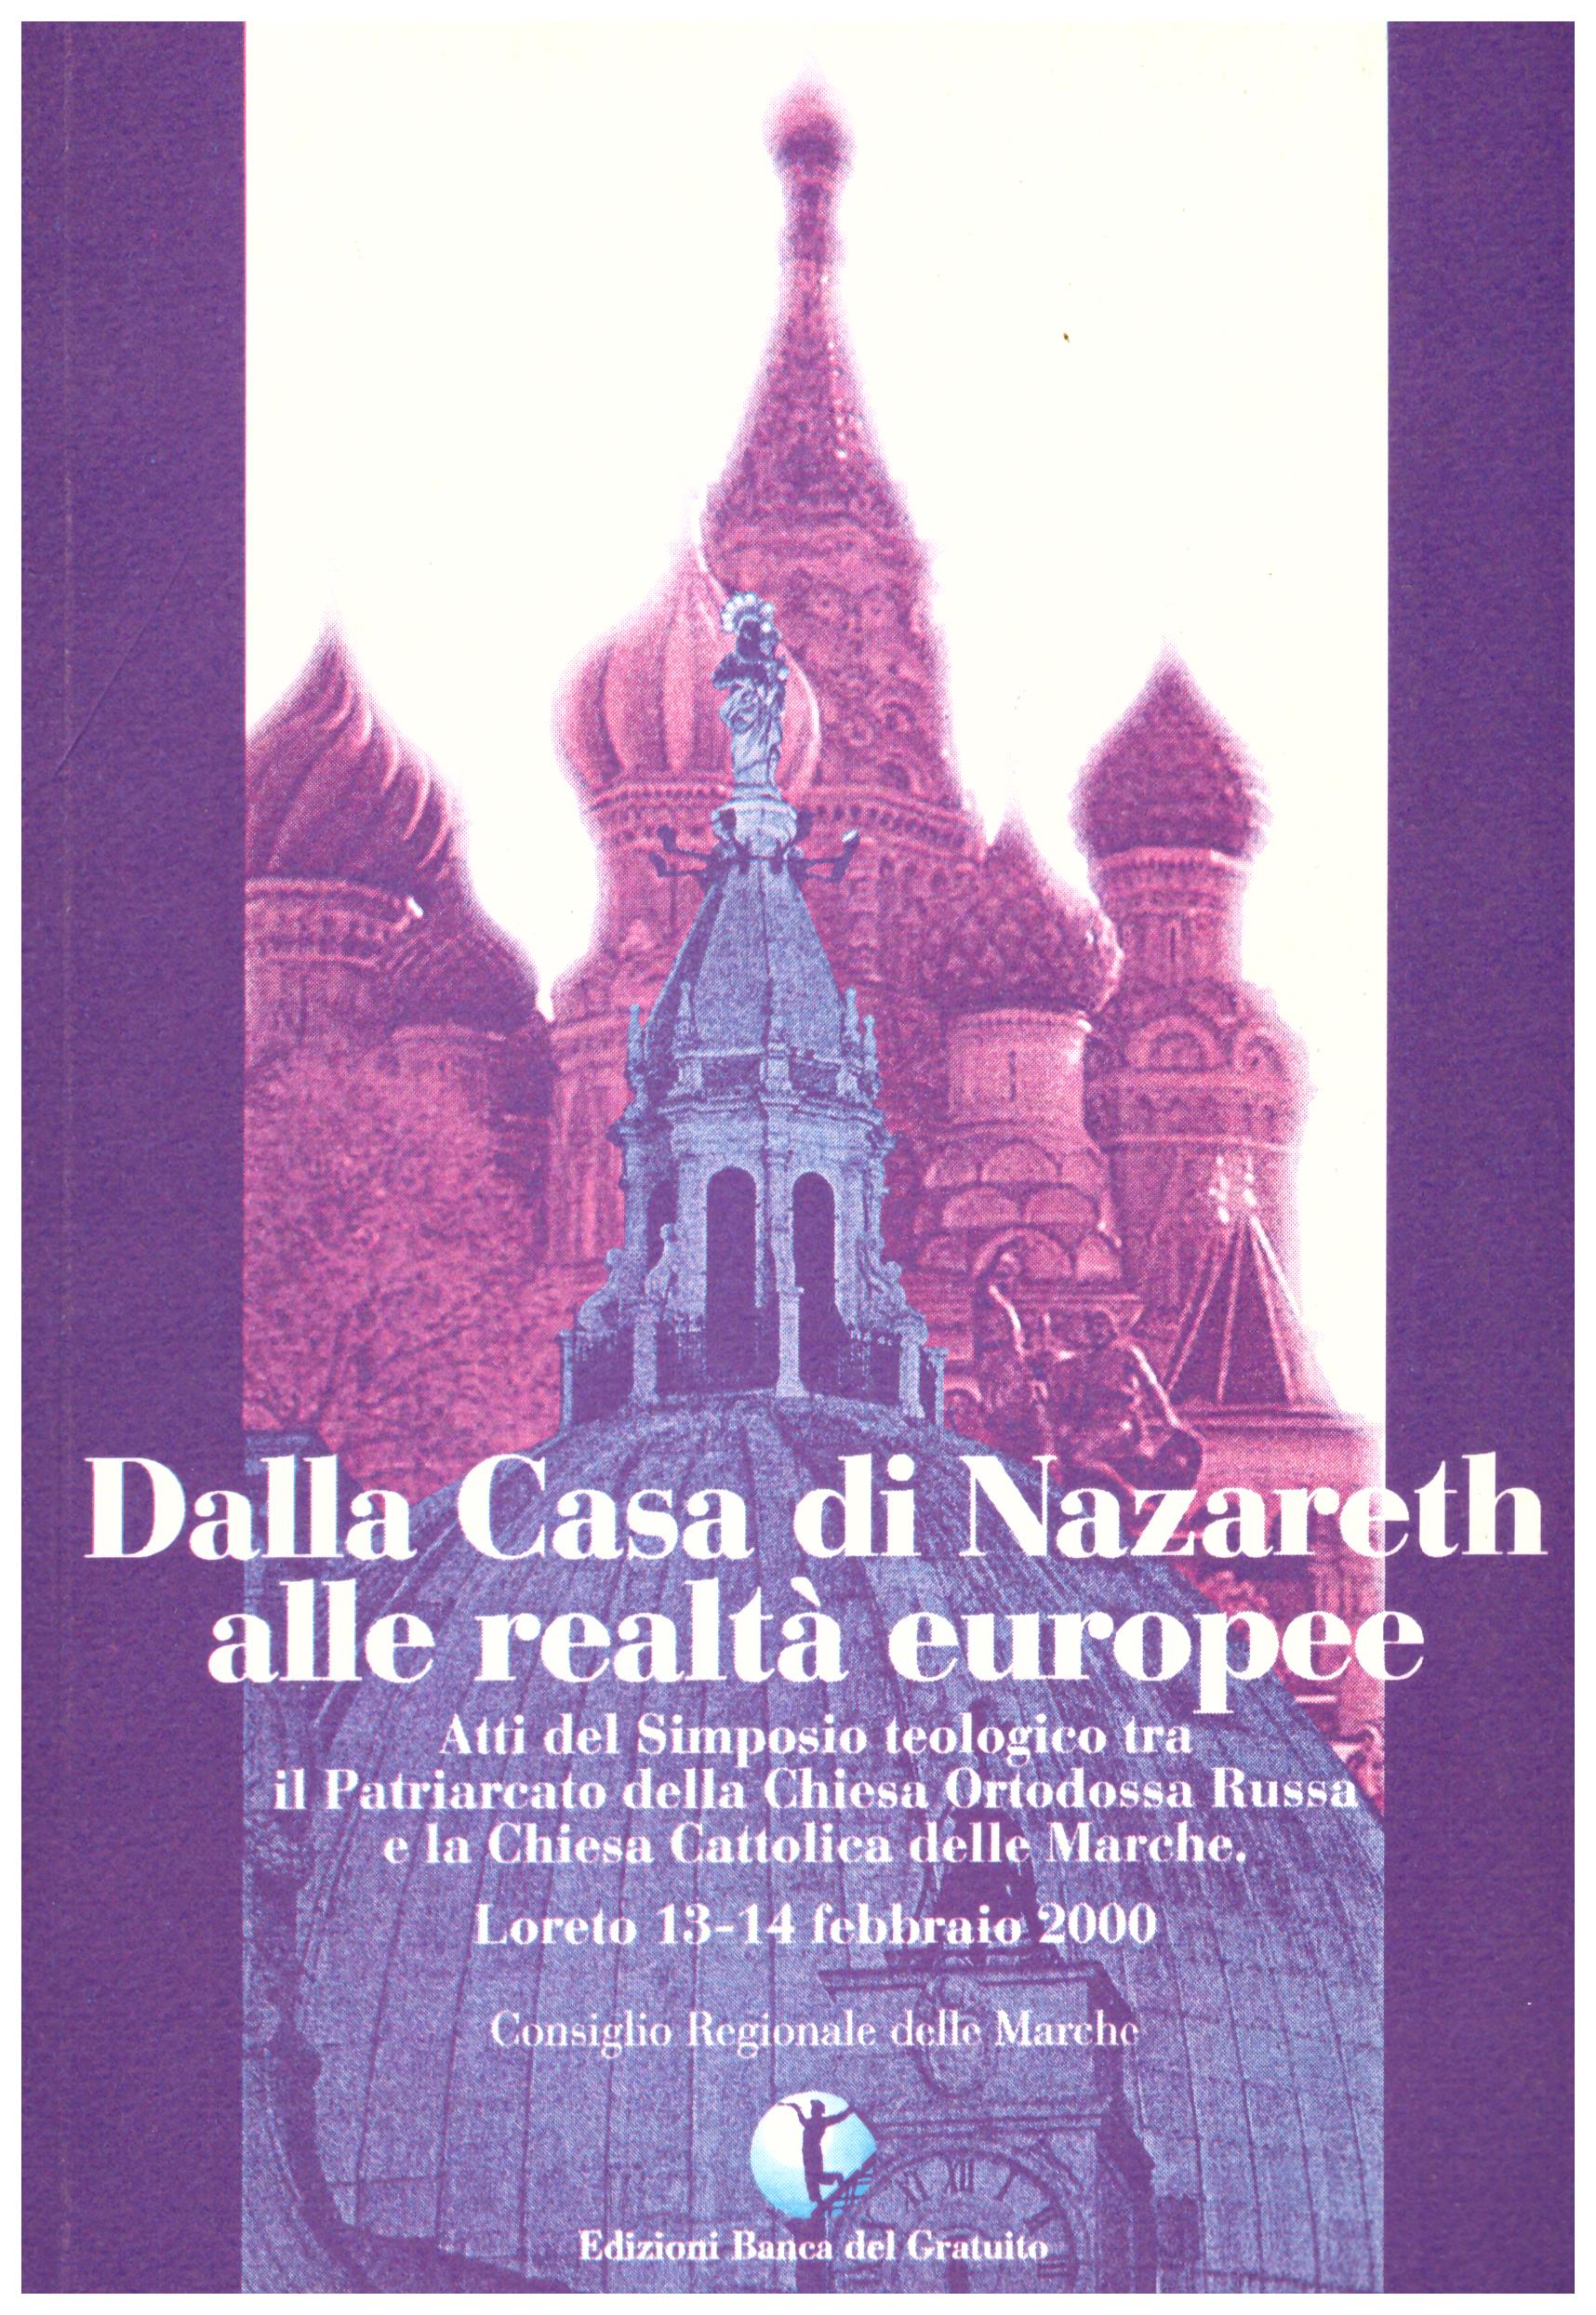 Titolo: Dalla casa di Nazareth alle realtà europee  Autore: AA.VV.  Editore: Banca del gratuito, 2000